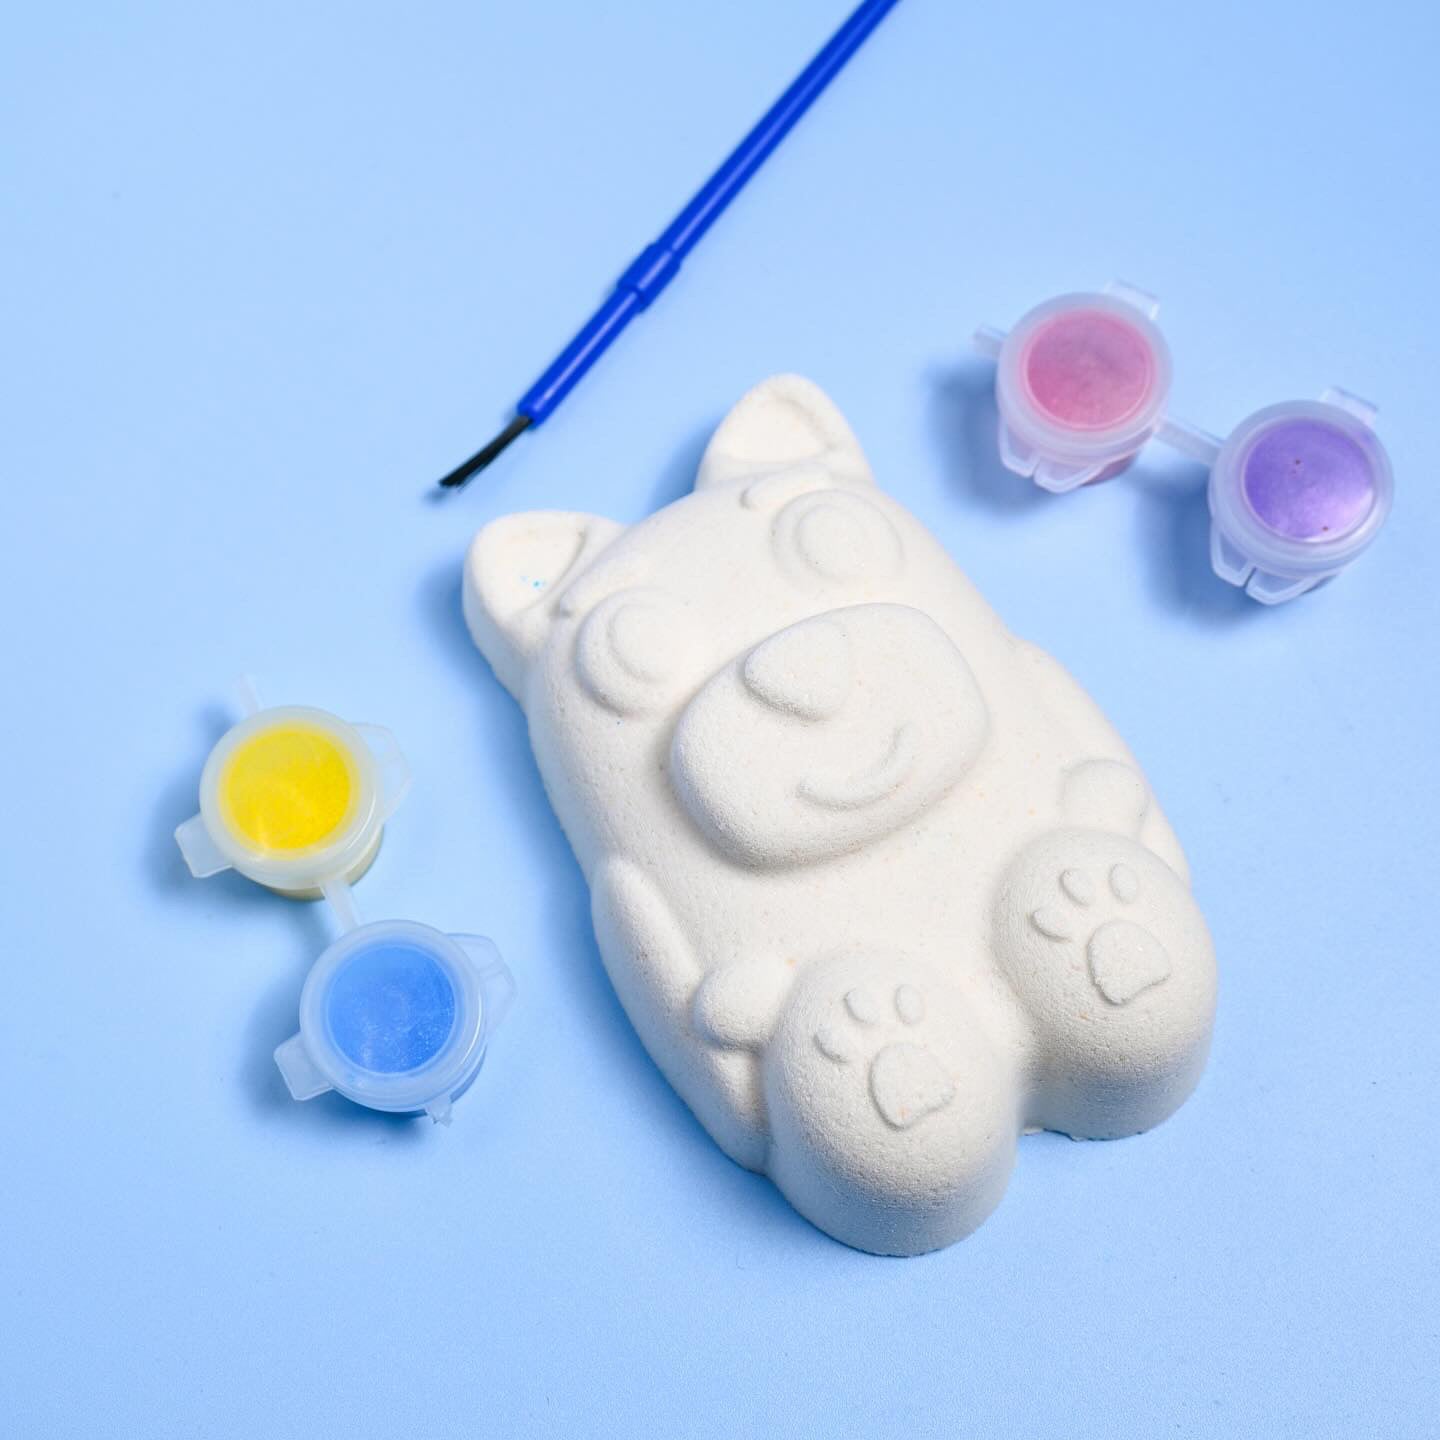 Paint Your Own Bath Bomb Kit - Bluey